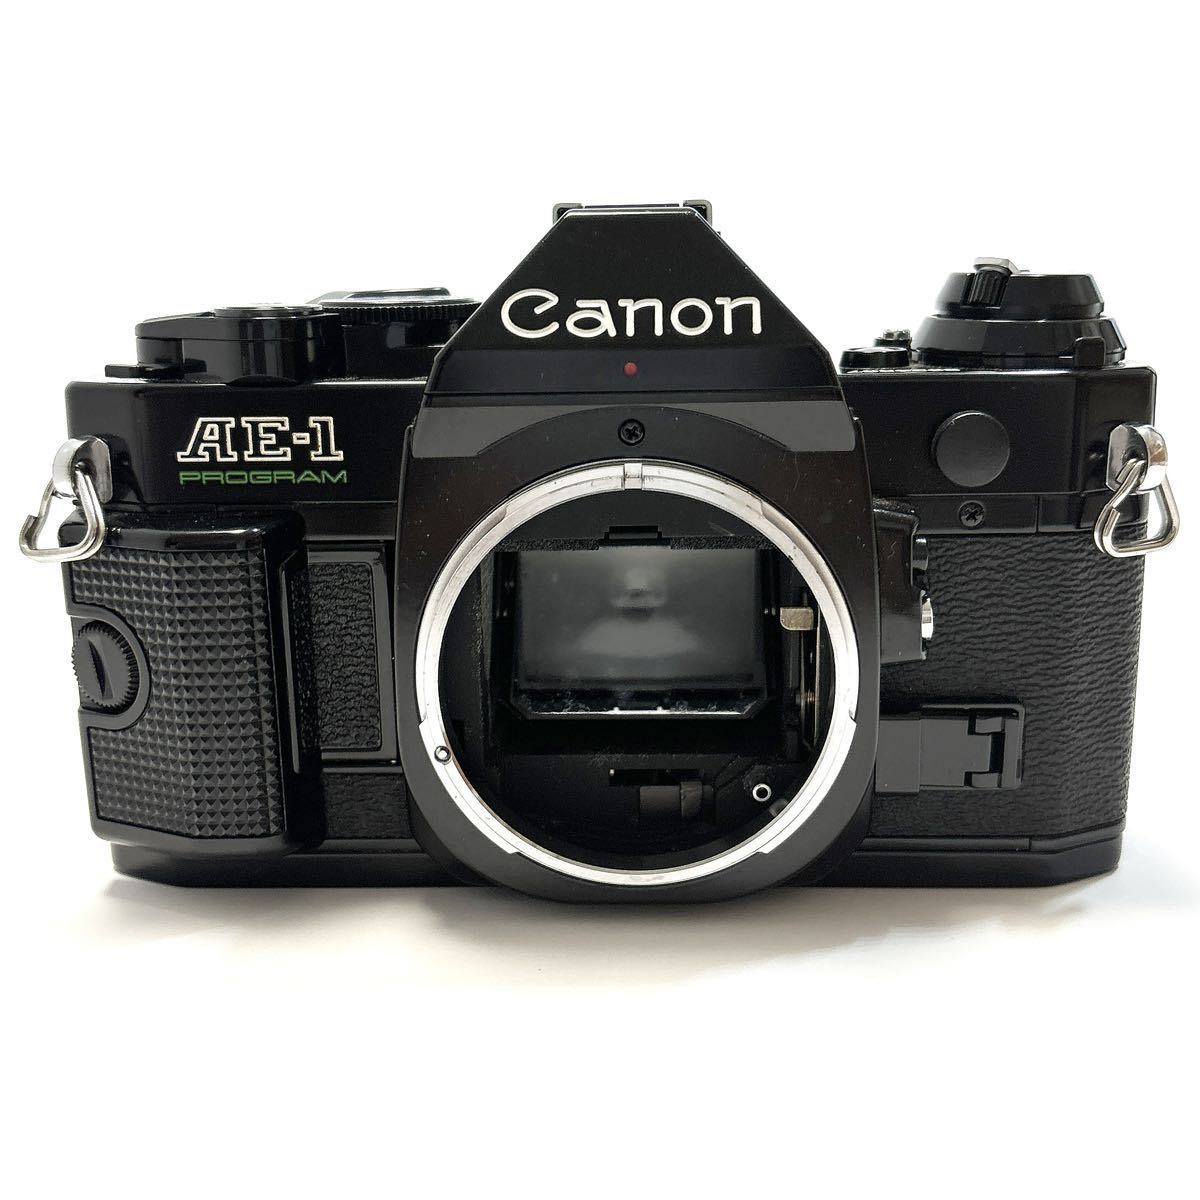 Canon キャノン AE-1 PROGRAM ブラックボディ SIGMA ZOOM-MASTER 1:2.8-4 35-70mm レンズ セット 一眼レフカメラ alp川0207_画像2